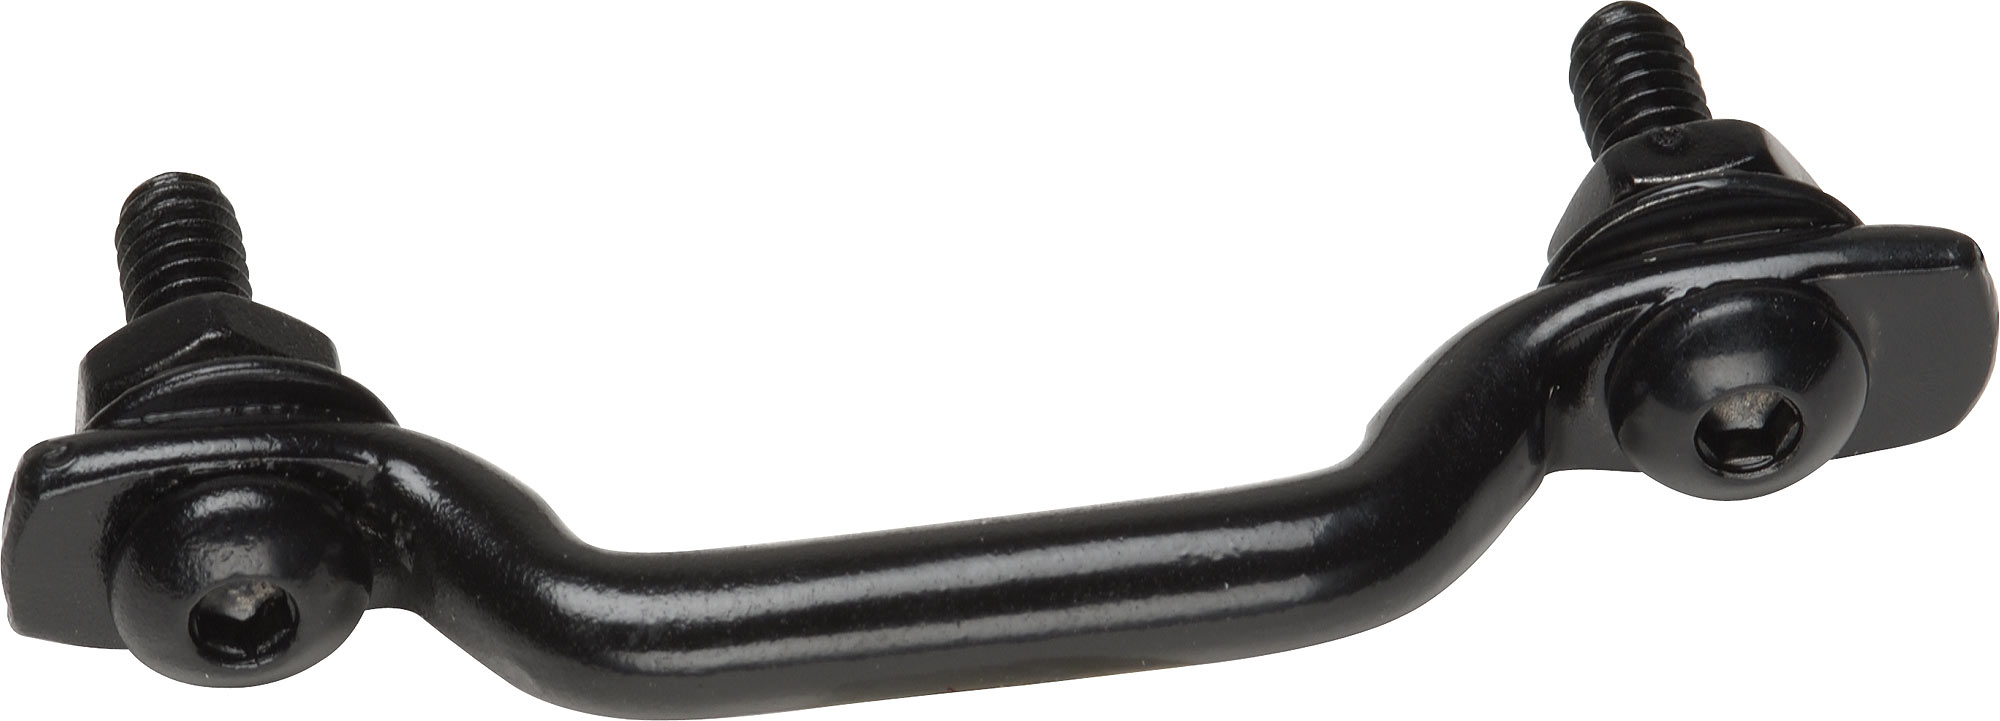 Black Stainless Steel Footman Loop - Click to Enlarge